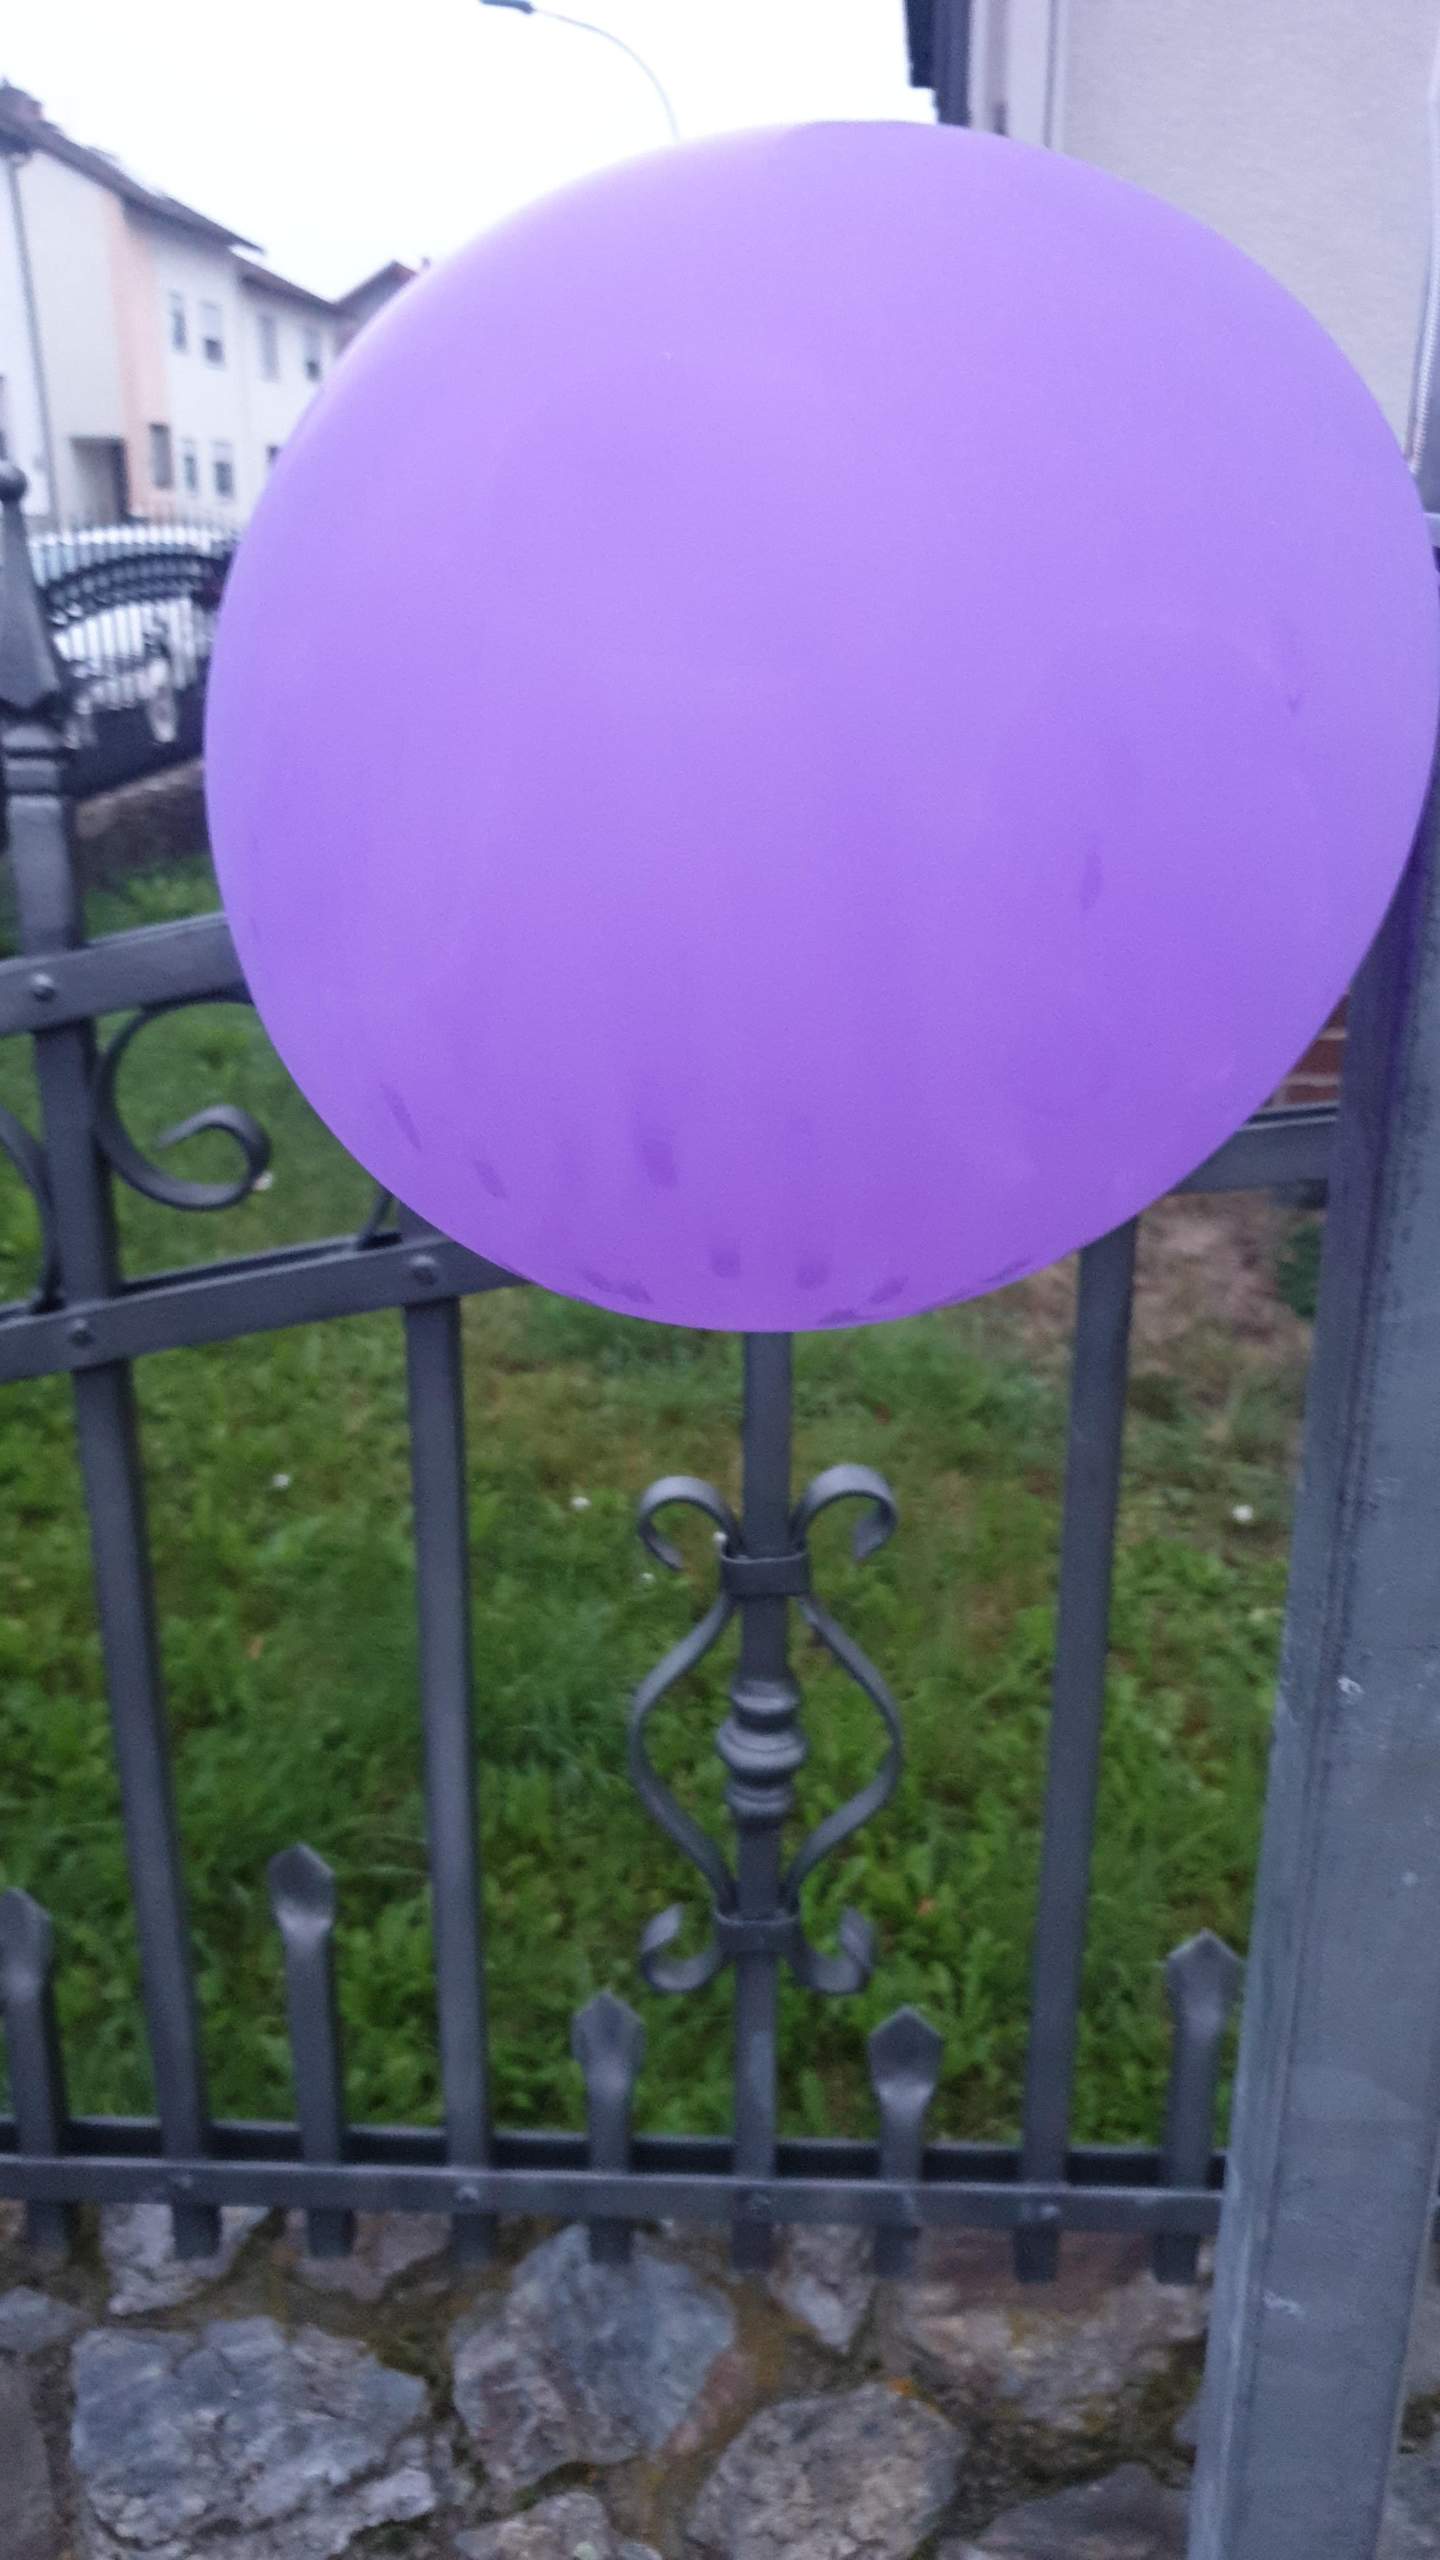 Warum hat man angst vor luftballons